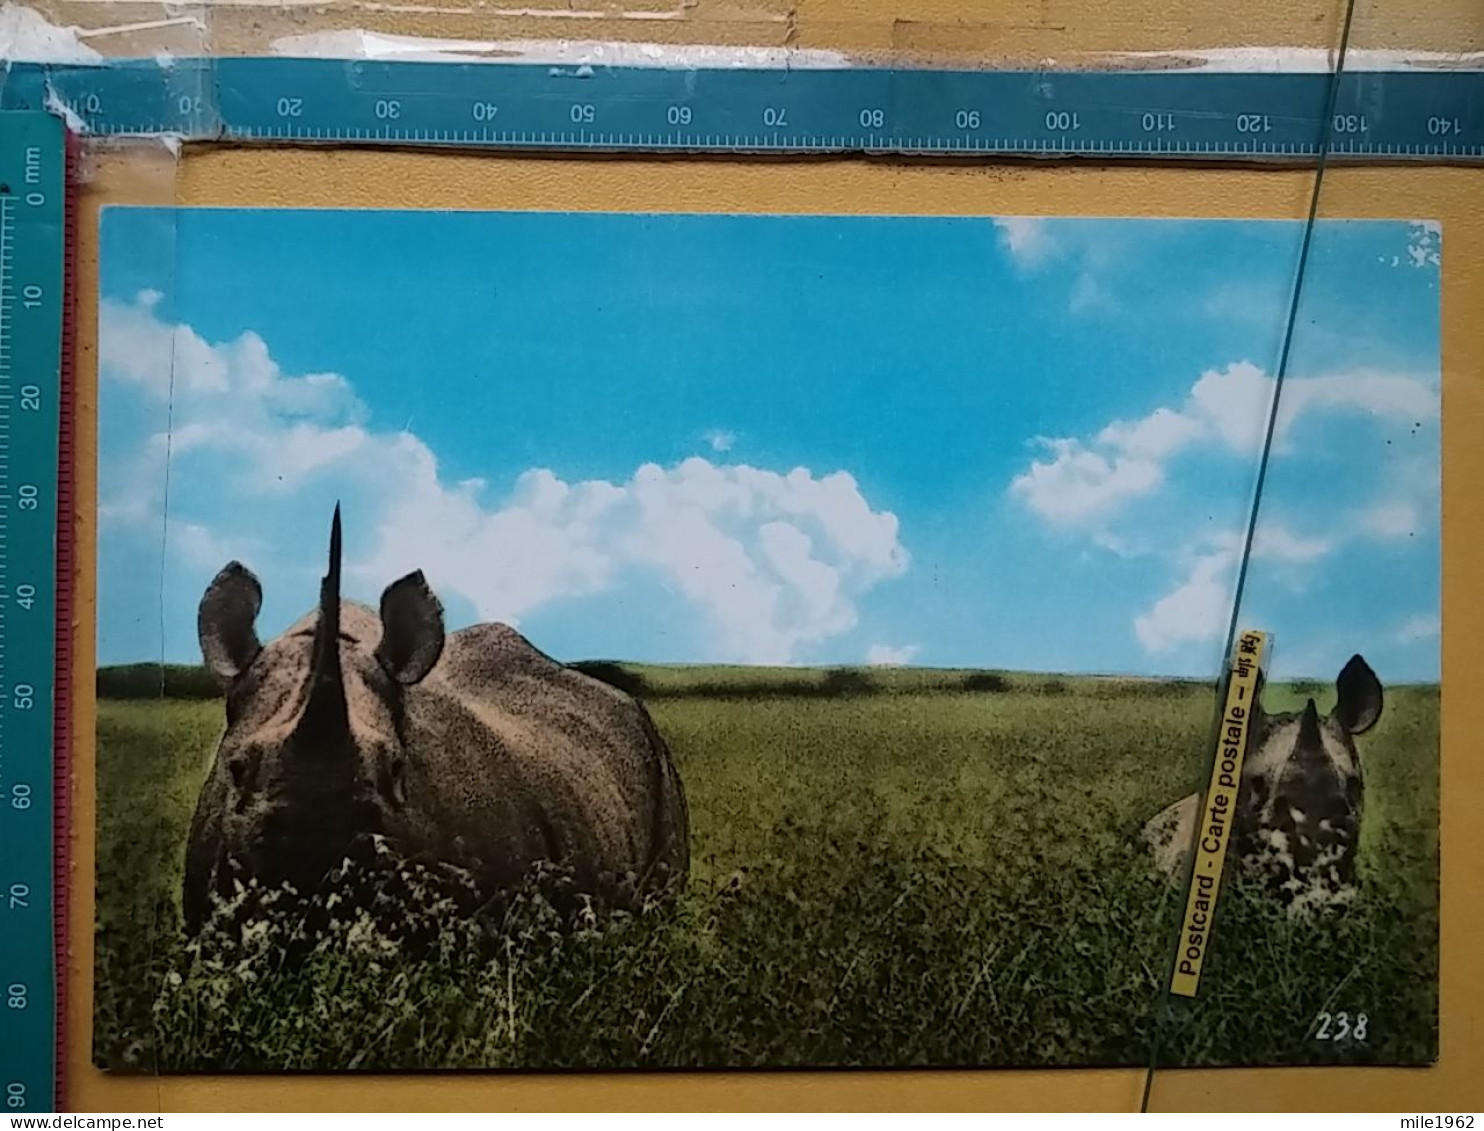 KOV 506-48 - RHINOCEROS, RHINO, AFRICA - Rhinozeros